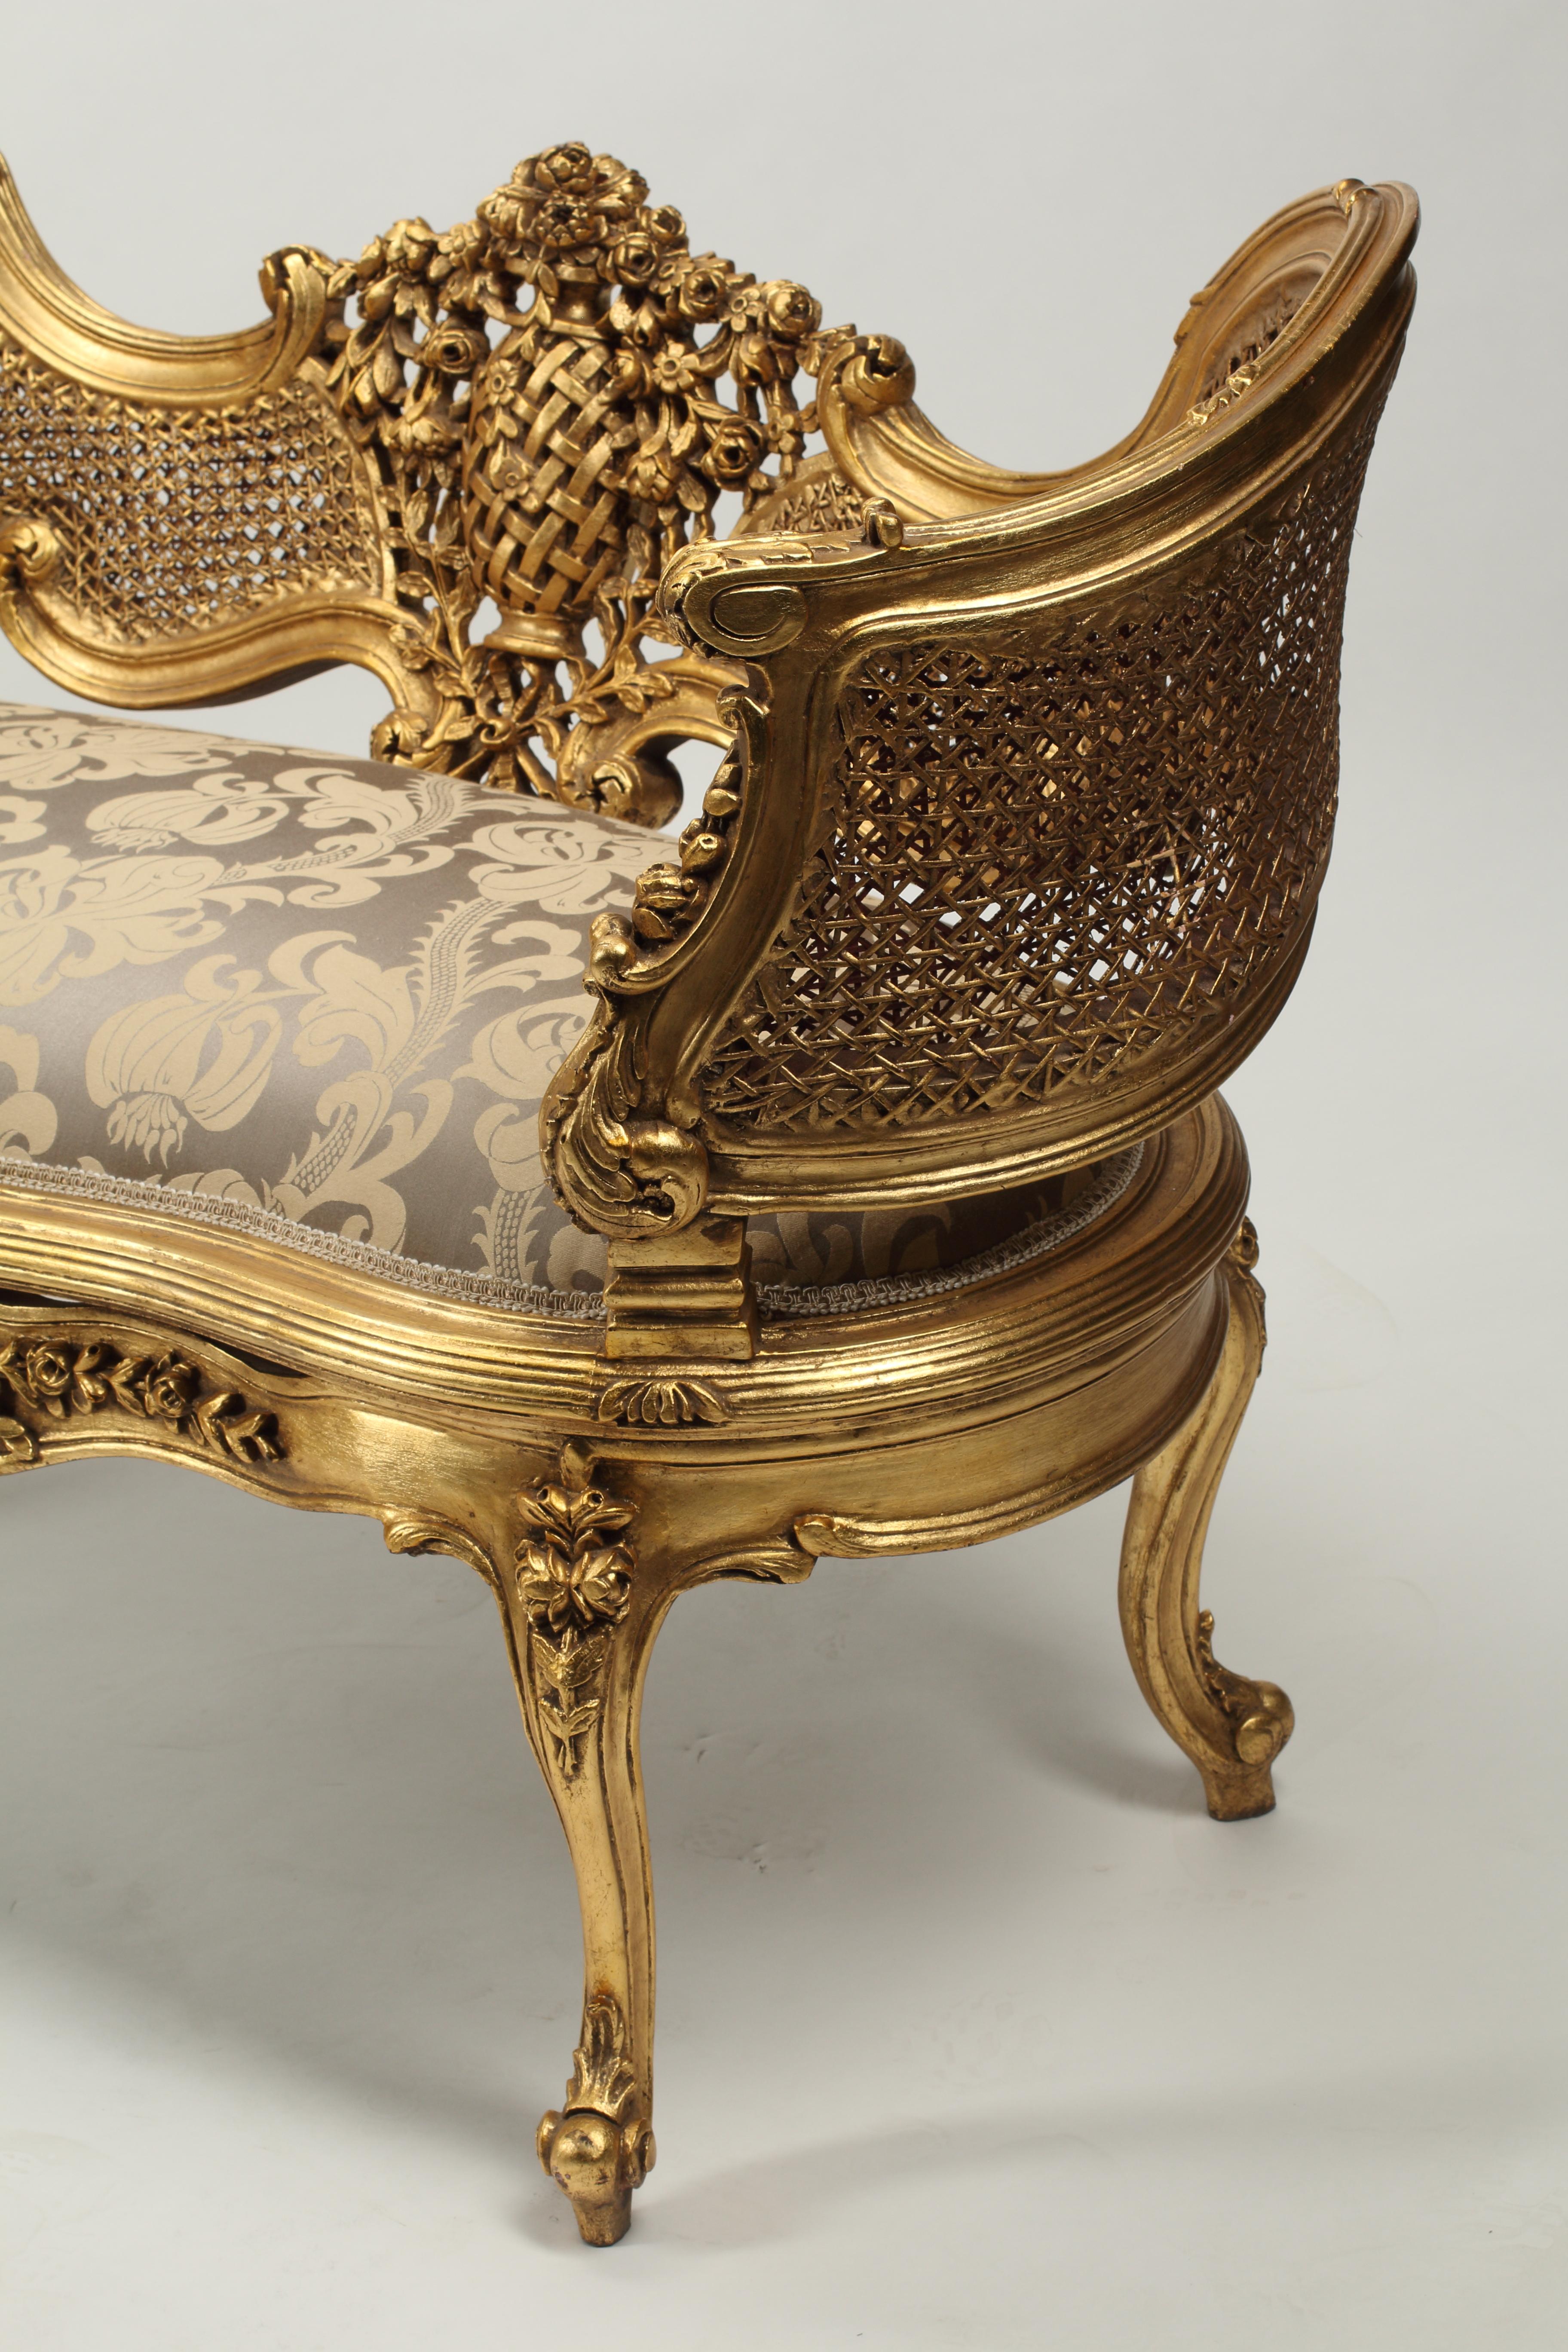 Ravissante paire de canapés en bois doré de style Louis XV. Dossiers et accoudoirs cannelés. Sculptures très décoratives de motifs floraux et de feuillages sur le cadre des canapés. 
Nouvellement tapissé d'un tissu taupe et doré avec une simple